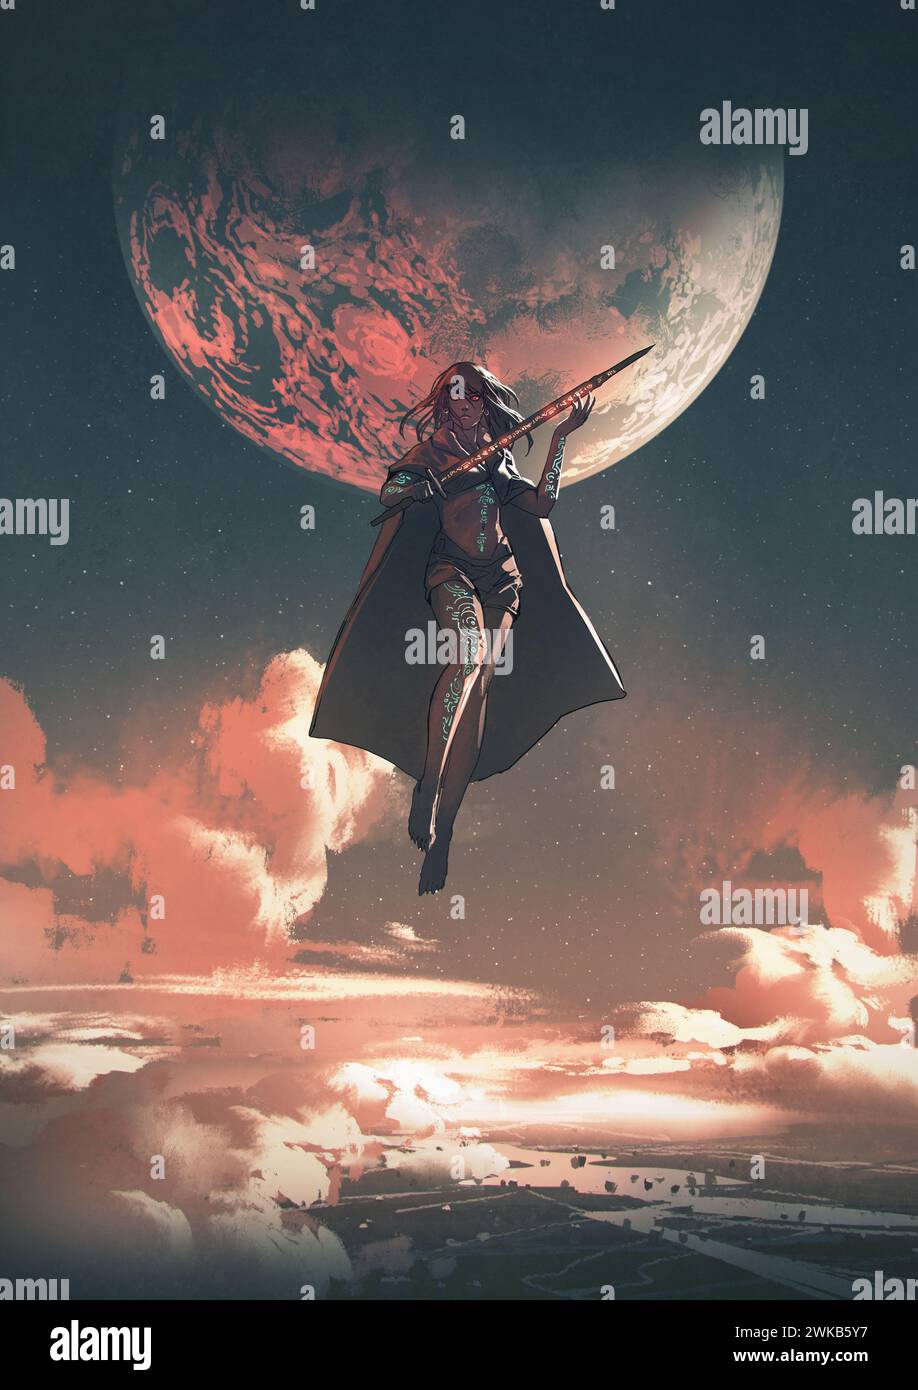 super-héros féminin tenant une épée magique flotte dans le ciel, style d'art numérique, peinture d'illustration Banque D'Images